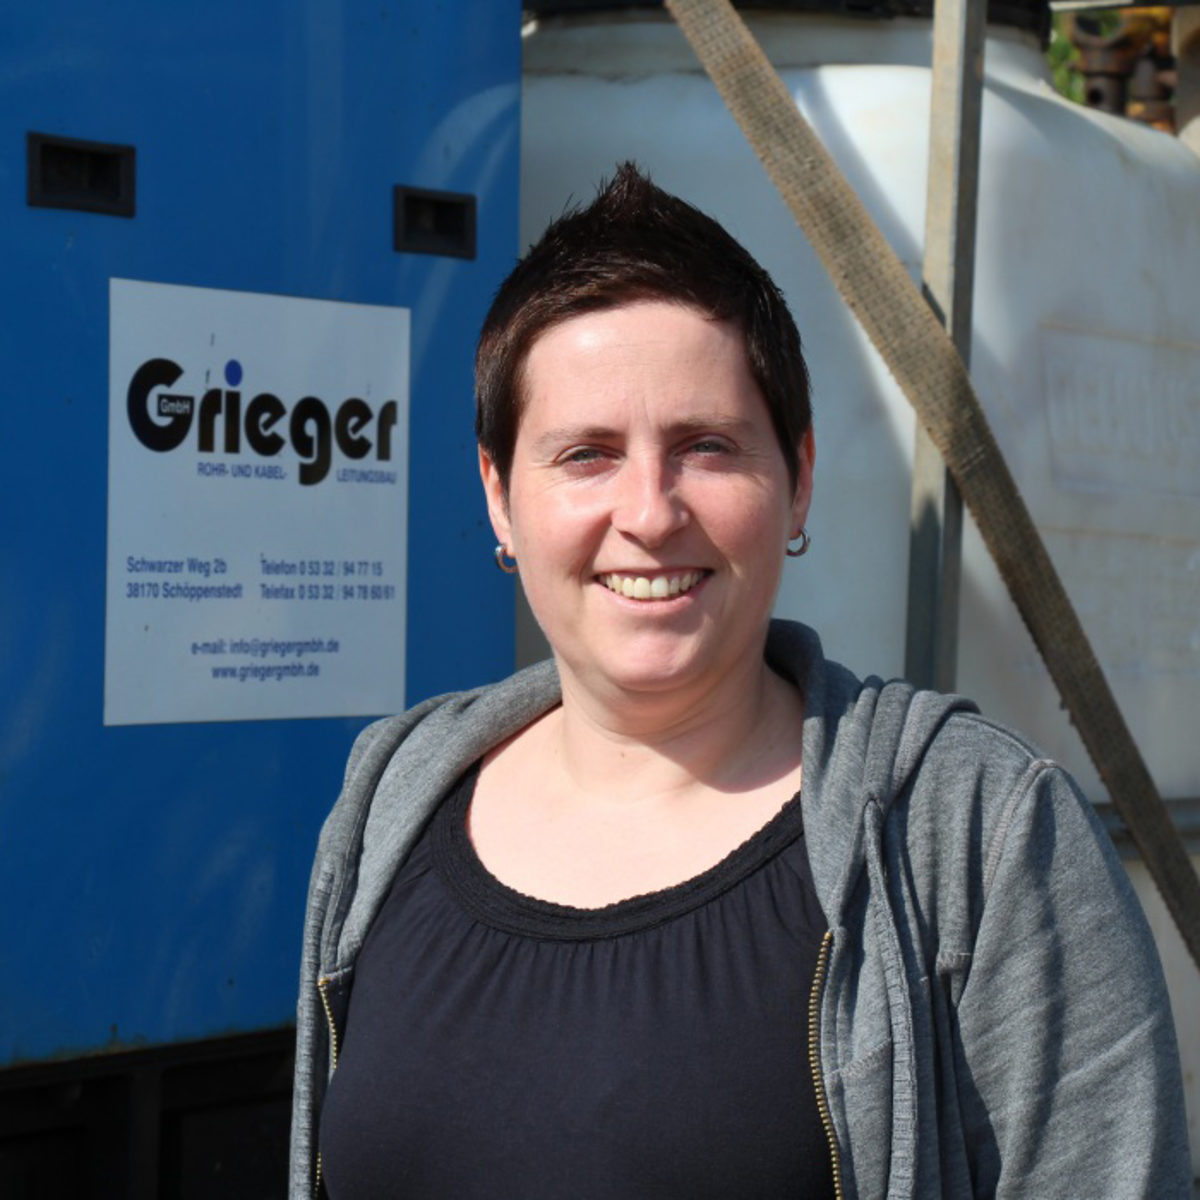 Jessica Lahouel, Geschäftsführerin der Grieger GmbH